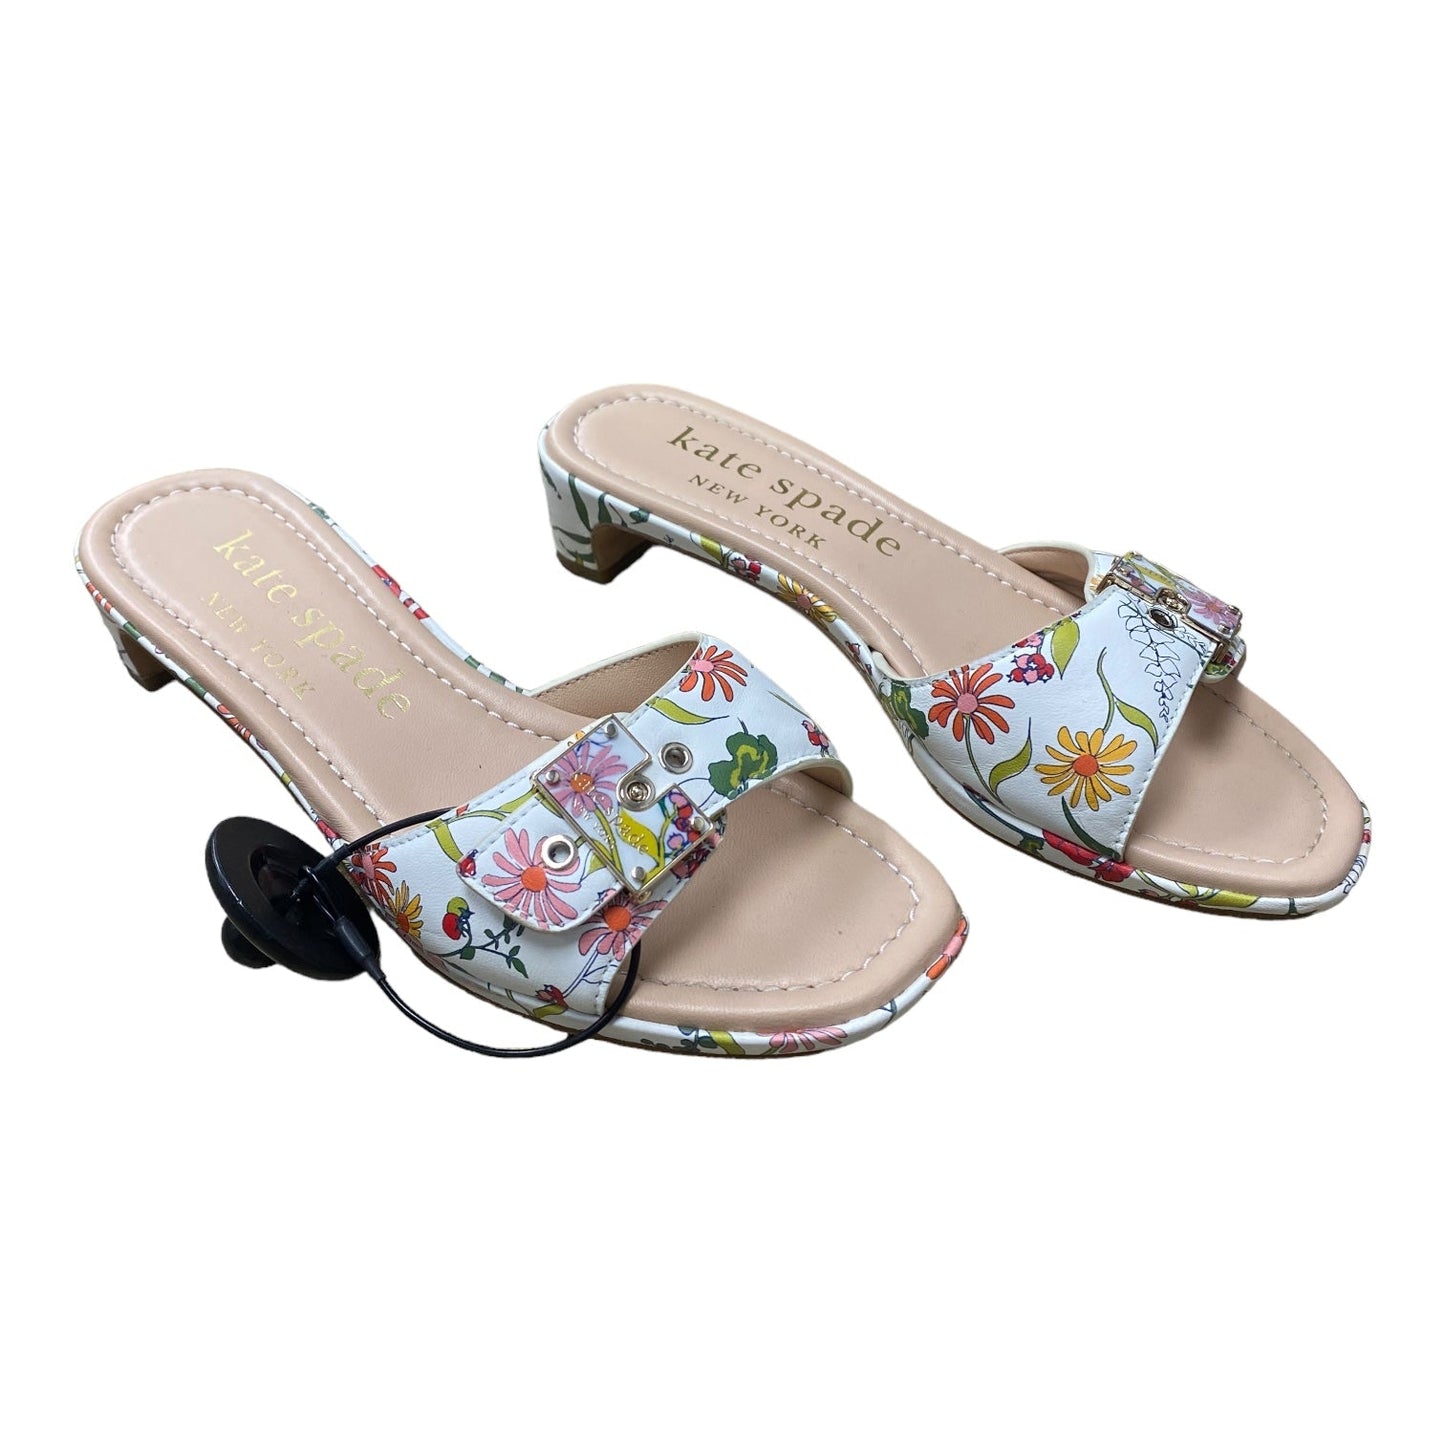 Floral Print Shoes Designer Kate Spade, Size 6